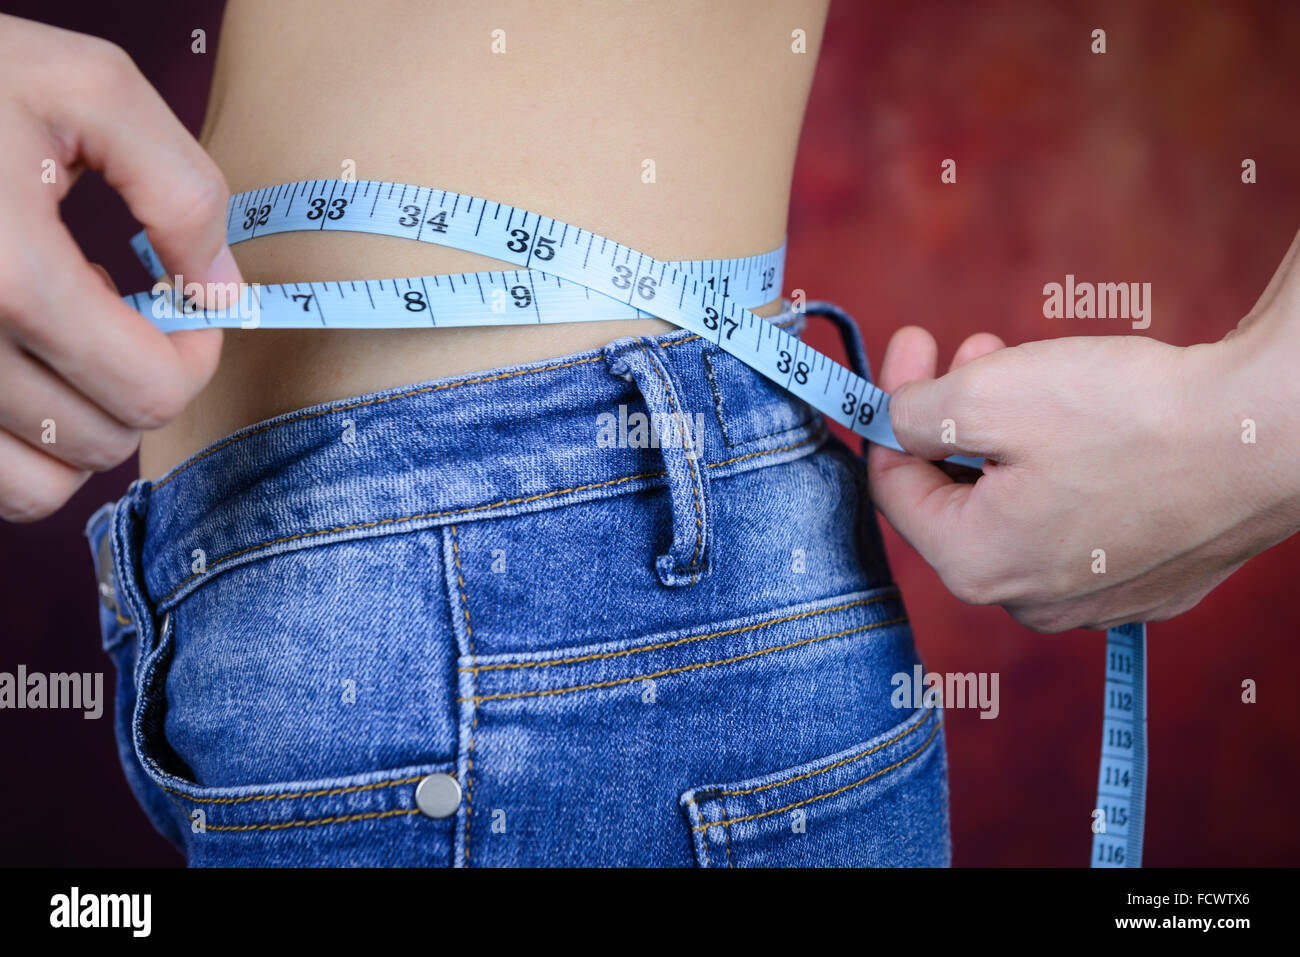 Slim mujer asiática , pantalones vaqueros, midiendo su forma corporal, cintura, nalgas Foto de stock